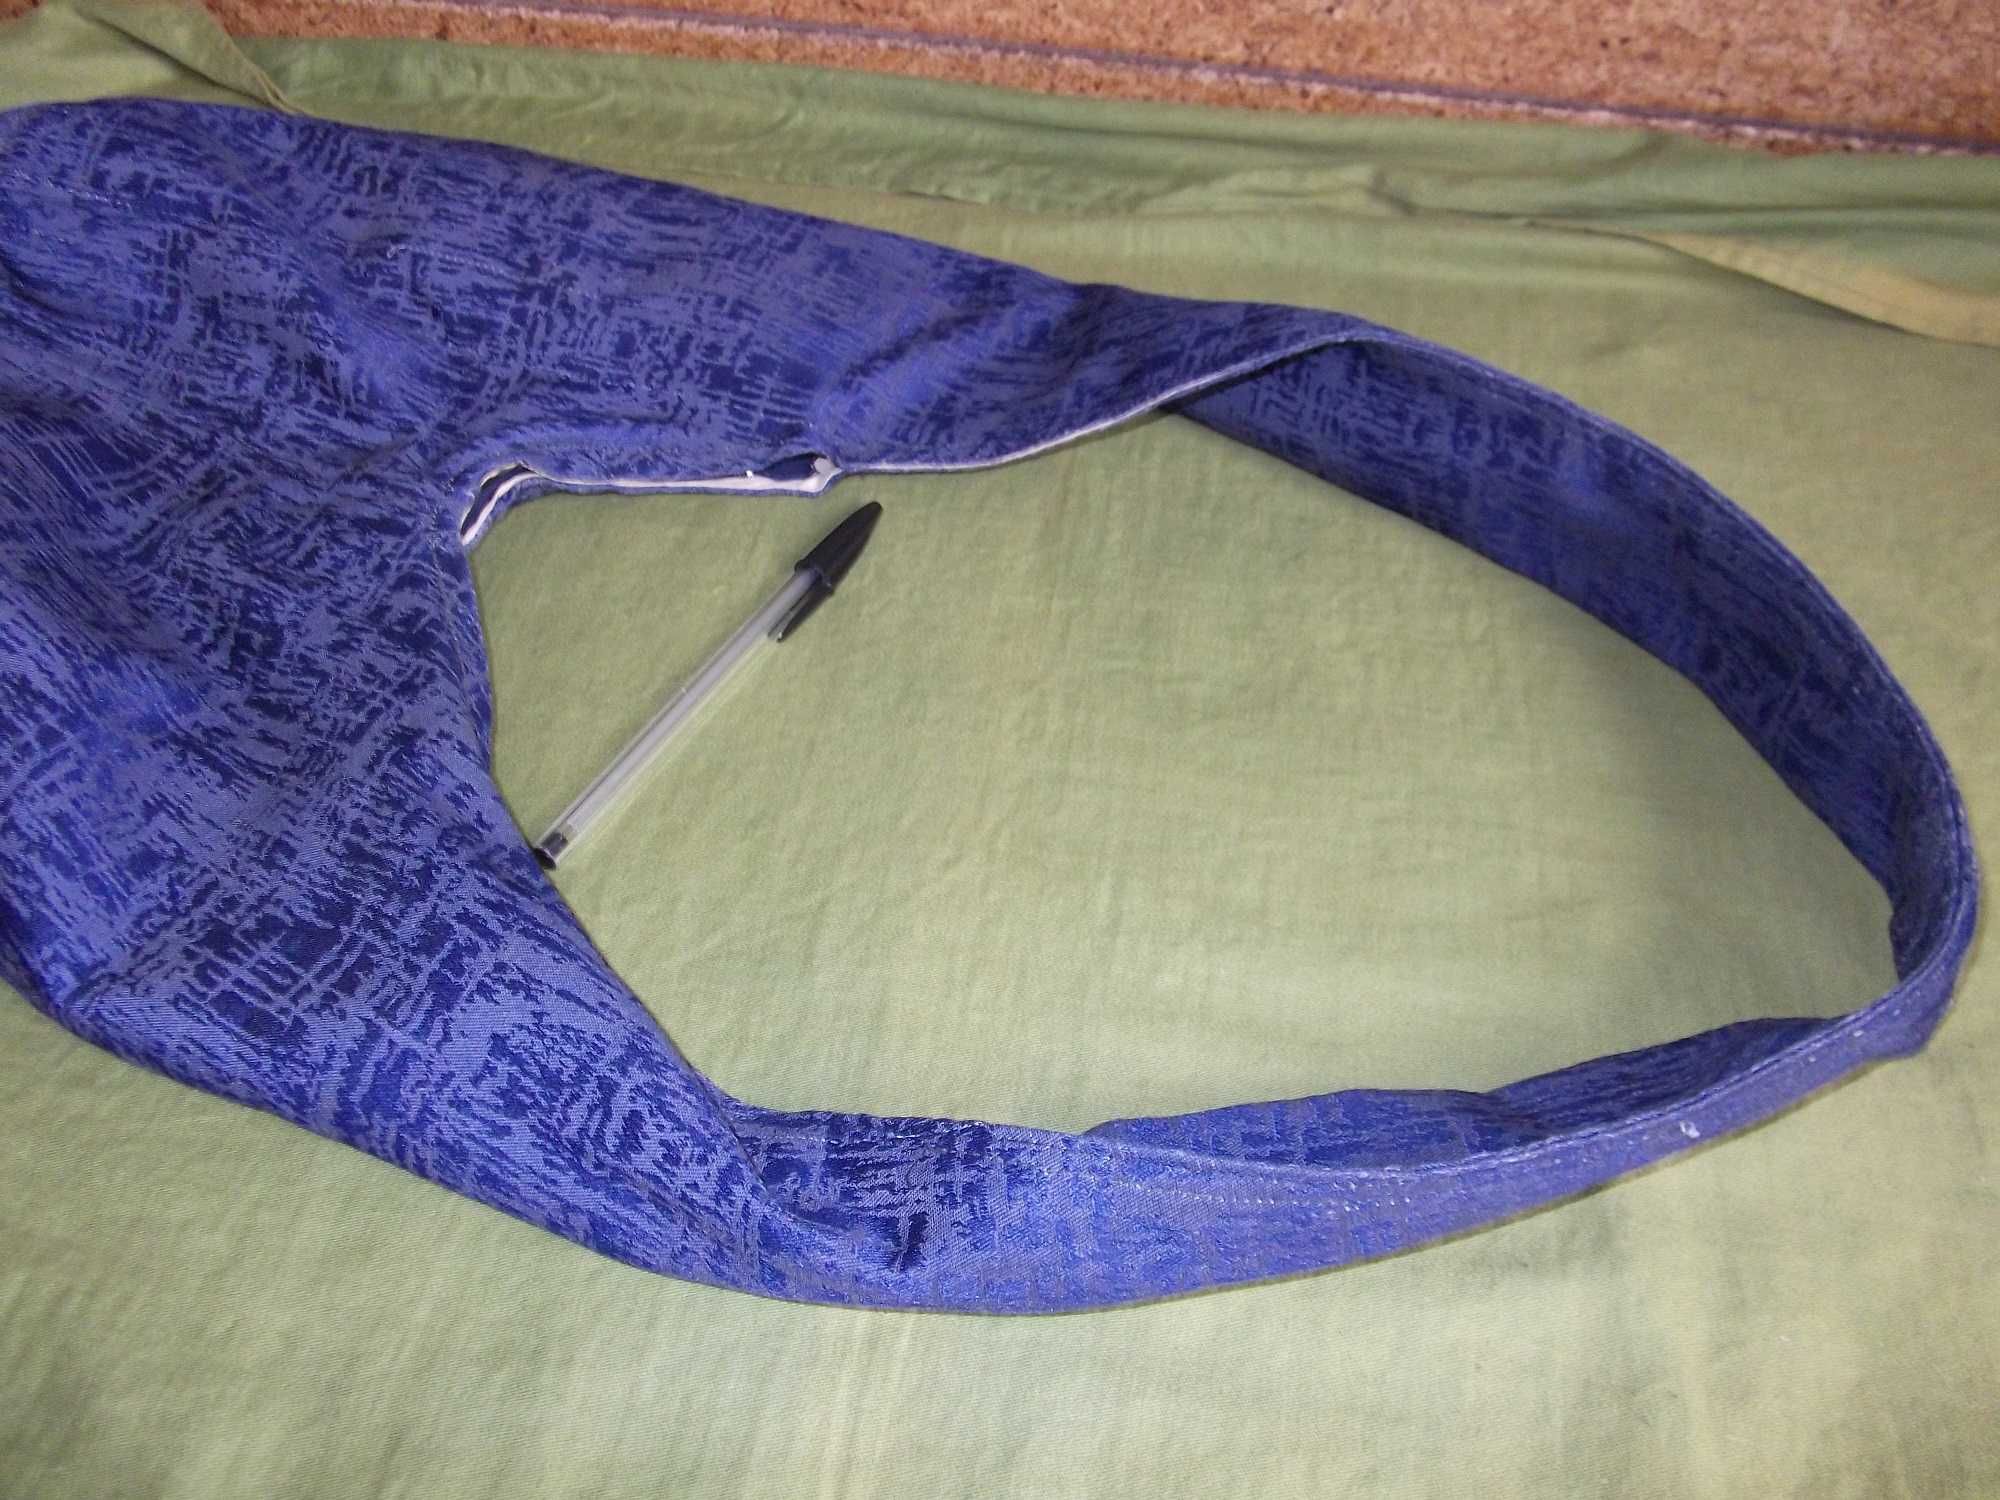 Mala tecido azul & cinza / Gray & blue fabric bag - ORIGINAL